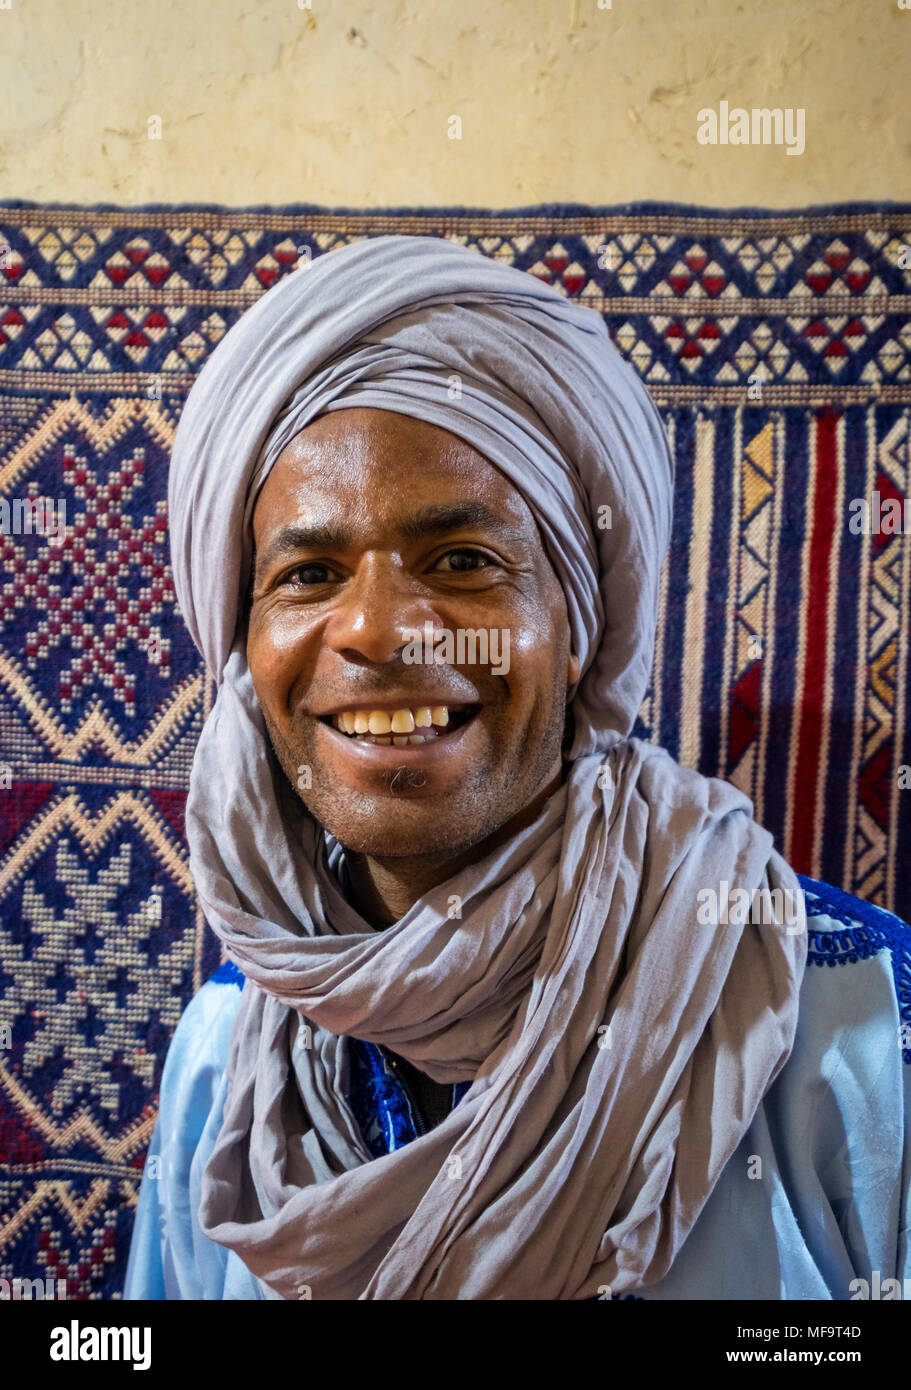 Retrato de un hombre con traje tradicional bereber, Tinghir, el Alto Atlas, Marruecos Foto de stock